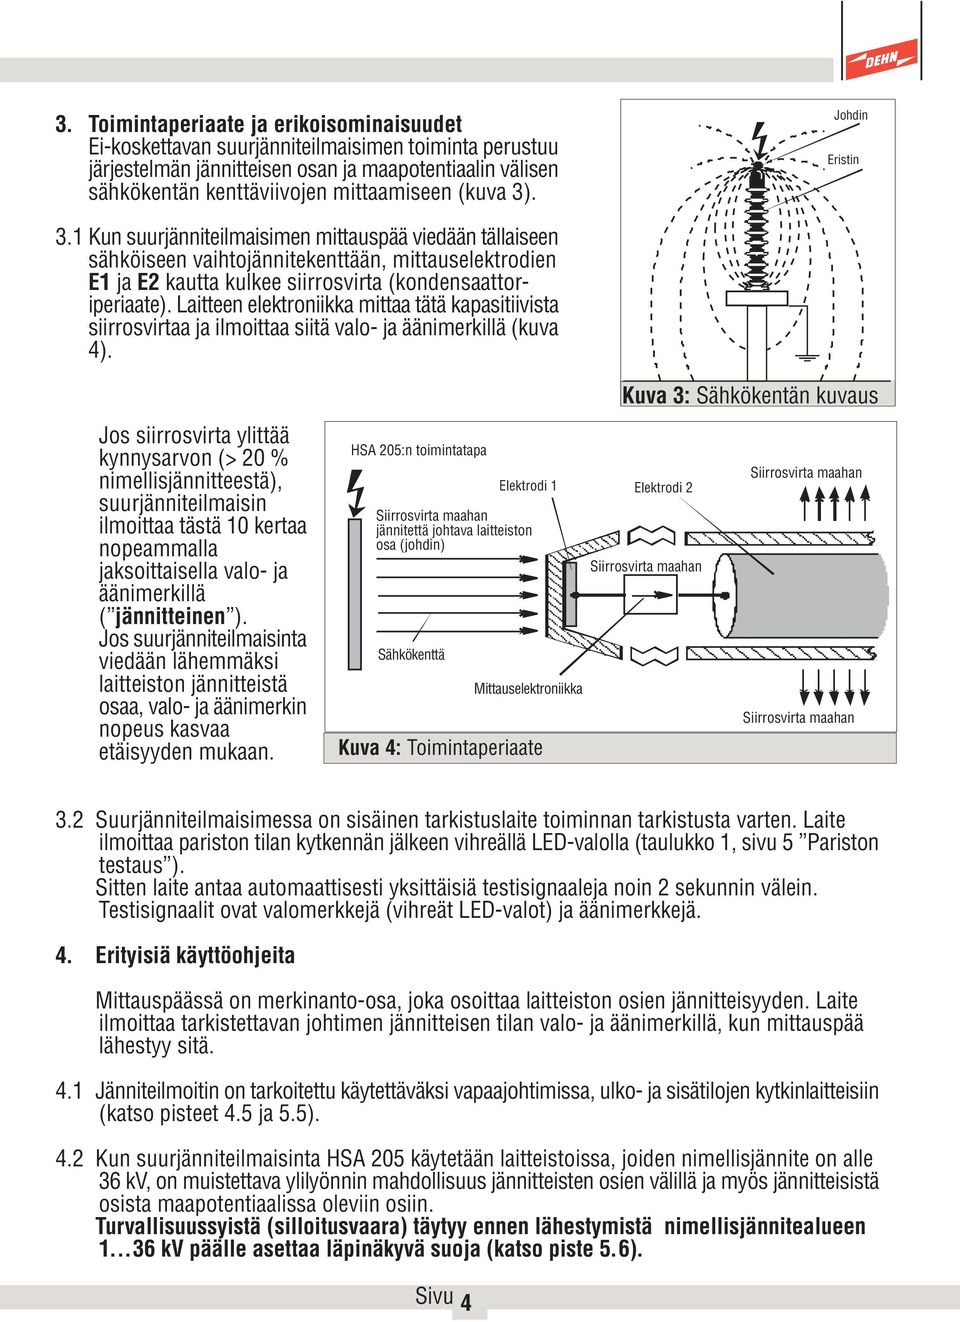 Laitteen elektroniikka mittaa tätä kapasitiivista siirrosvirtaa ja ilmoittaa siitä valo- ja äänimerkillä (kuva 4).